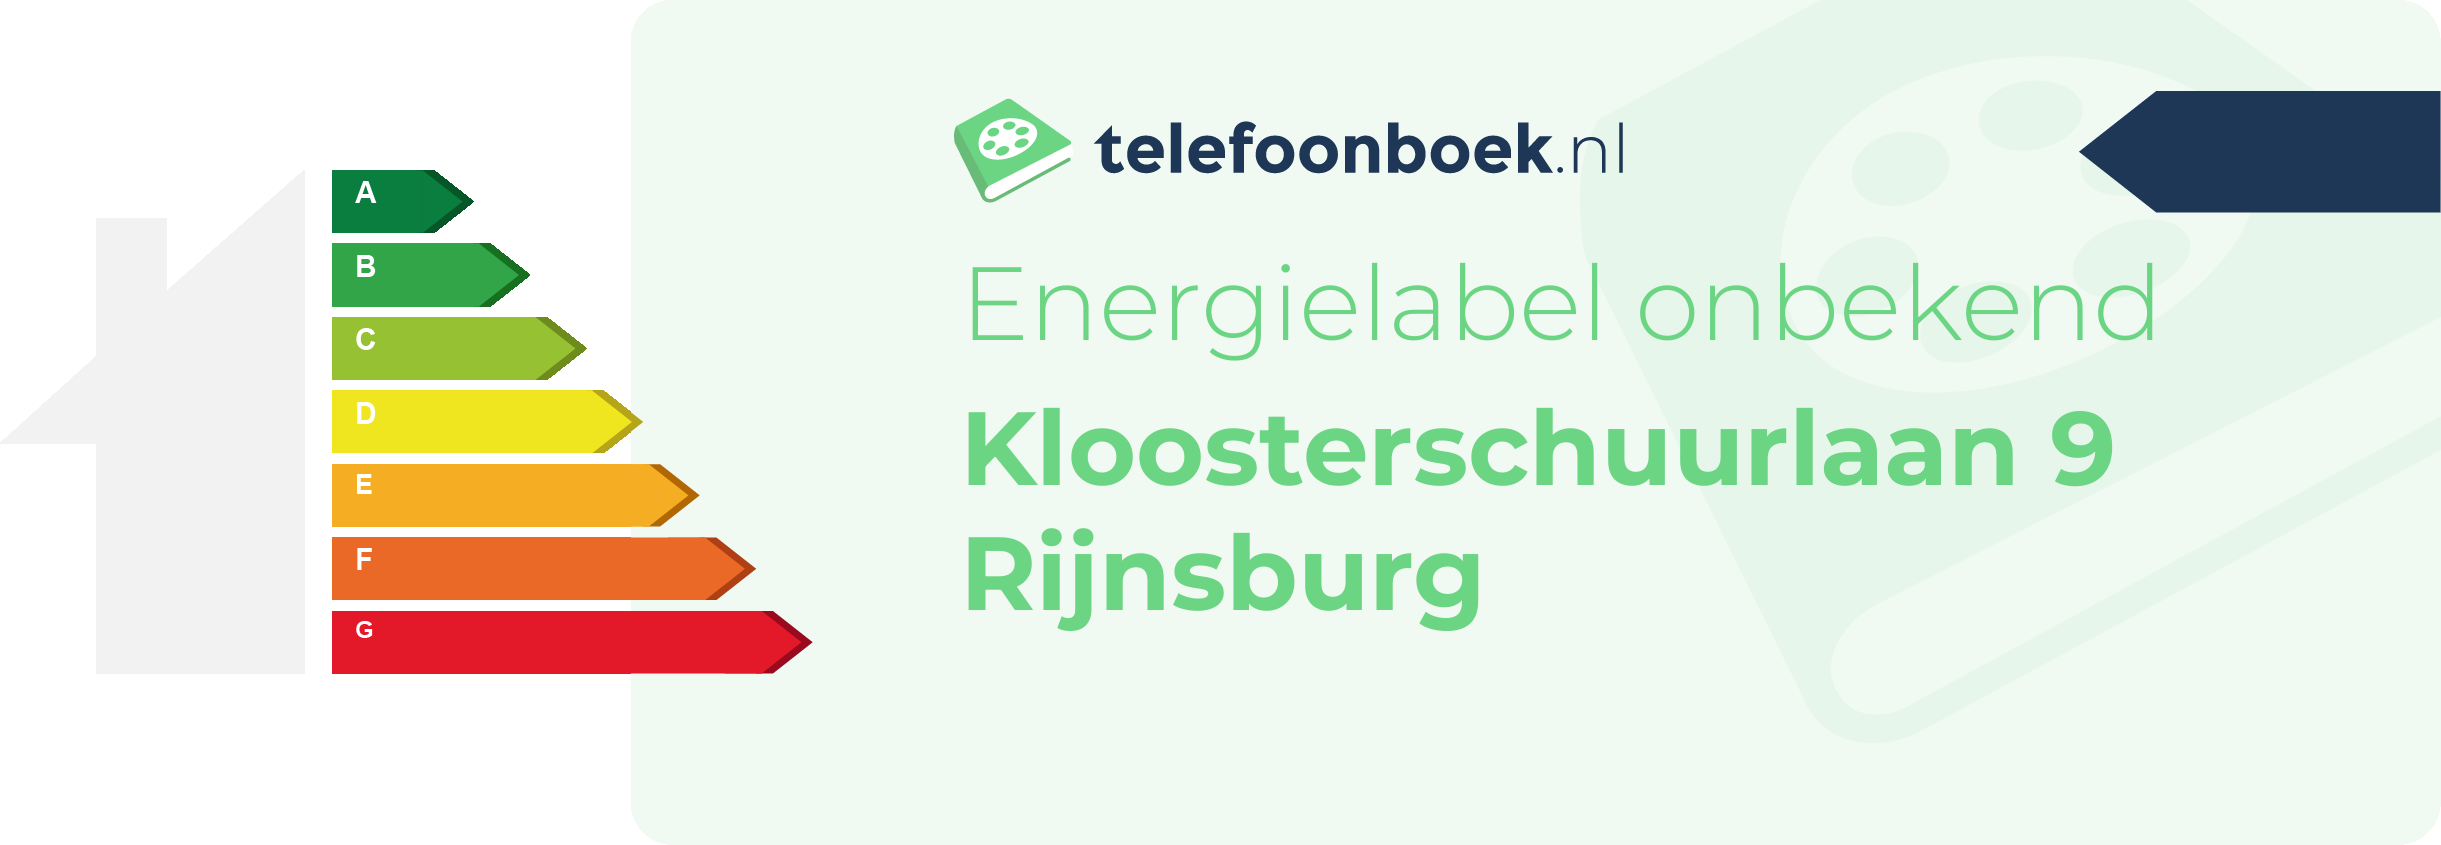 Energielabel Kloosterschuurlaan 9 Rijnsburg